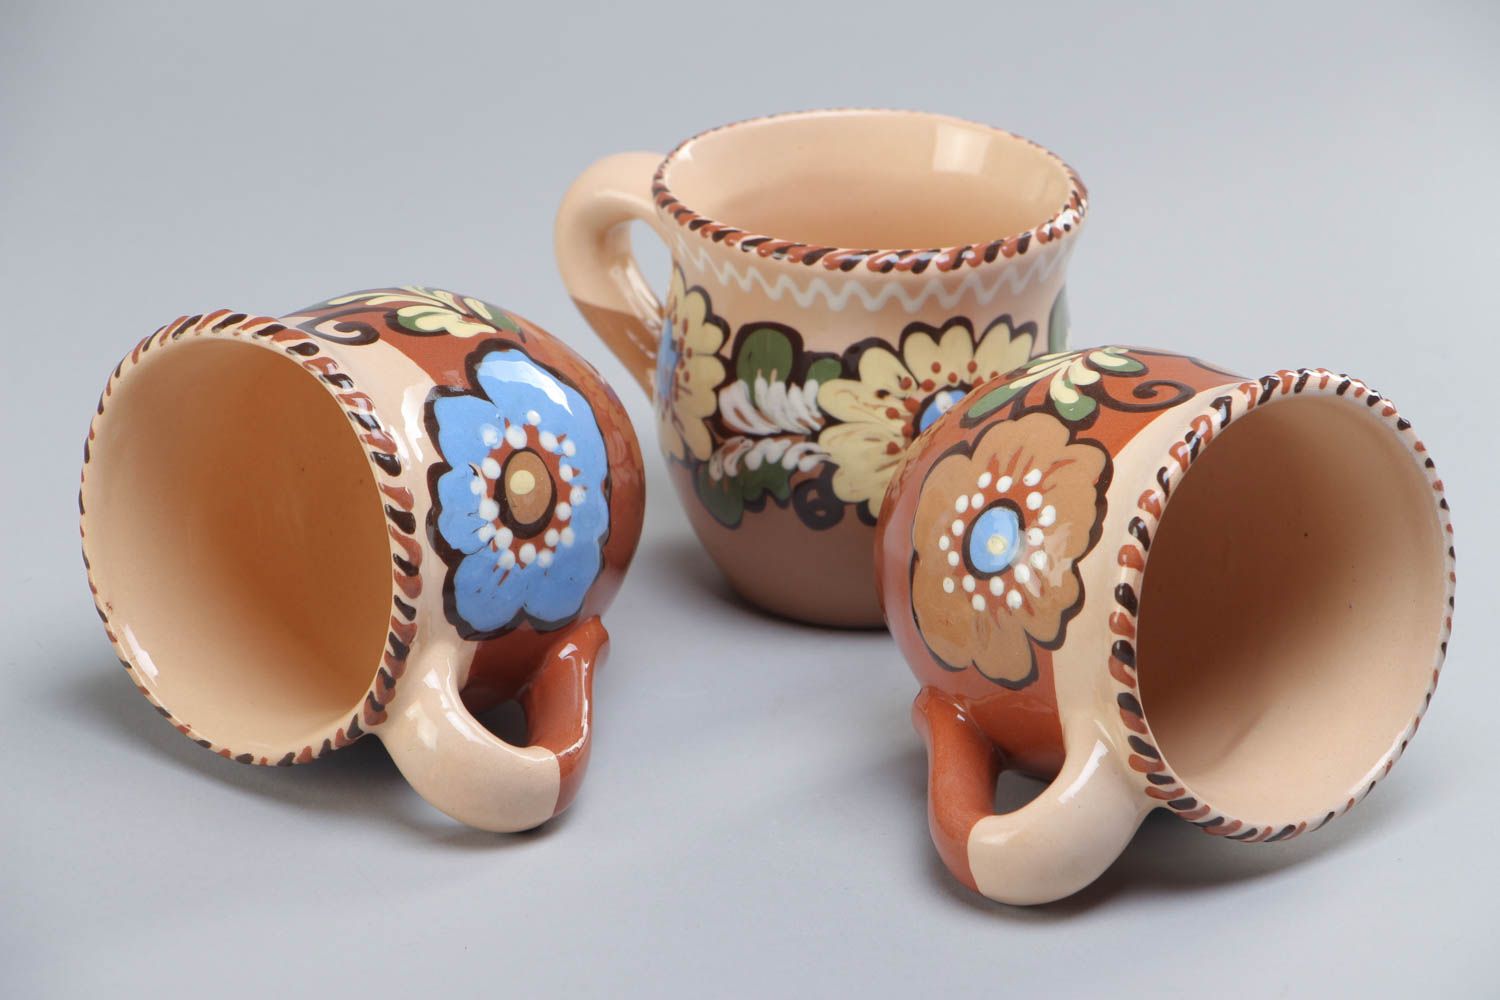 Juego de tazas artesanales de cerámica pintadas con barniz multicolor 3 piezas por 250 ml foto 4